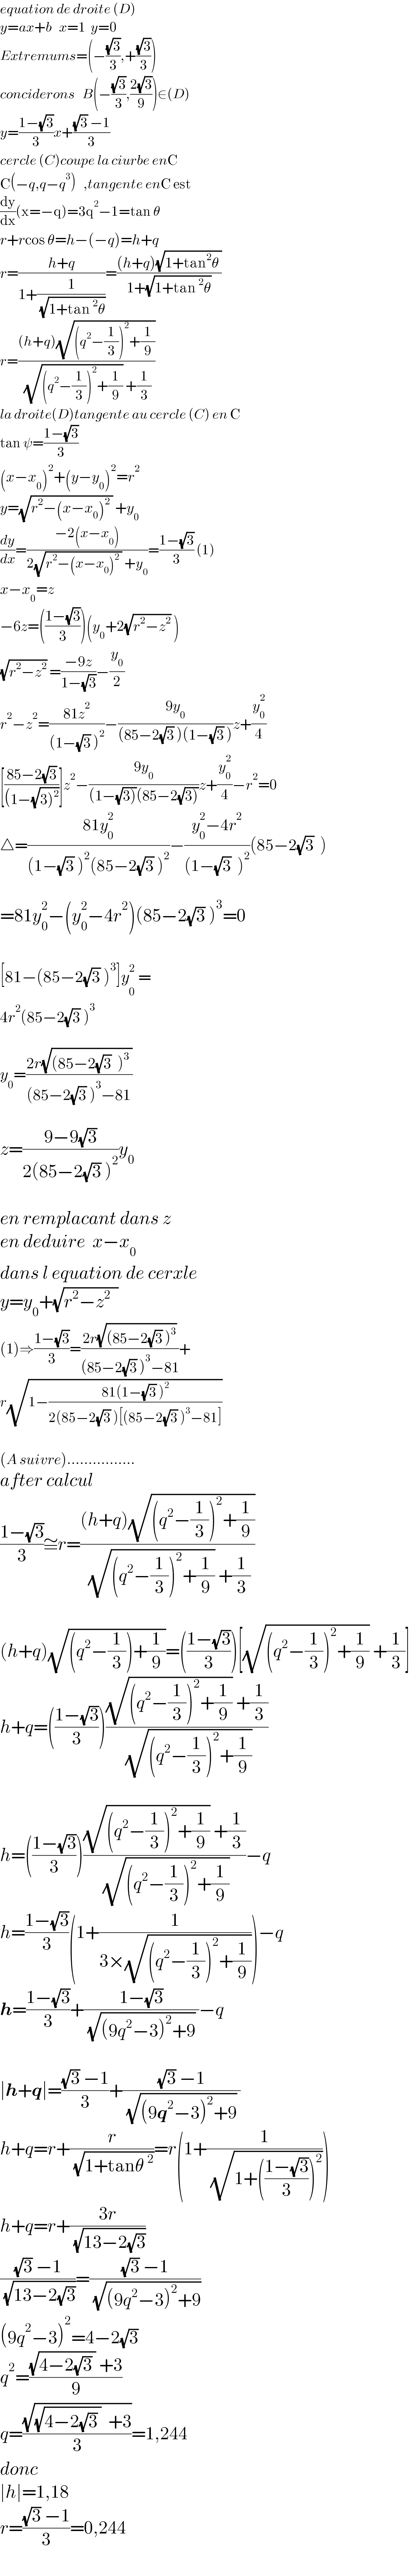 equation de droite (D)  y=ax+b   x=1  y=0  Extremums=(−((√3)/3),+((√3)/3))  conciderons   B(−((√3)/3),((2(√3))/9))∈(D)  y=((1−(√3))/3)x+(((√3) −1)/3)  cercle (C)coupe la ciurbe enC  C(−q,q−q^3 )   ,tangente enC est  (dy/dx)(x=−q)=3q^2 −1=tan θ  r+rcos θ=h−(−q)=h+q  r=((h+q)/(1+(1/( (√(1+tan^2 θ))))))=(((h+q)(√(1+tan^2 θ )))/(1+(√(1+tan^2 θ))))  r=(((h+q)(√((q^2 −(1/3))^2 +(1/9))))/( (√((q^2 −(1/3))^2 +(1/9))) +(1/3)))  la droite(D)tangente au cercle (C) en C  tan ψ=((1−(√3))/3)  (x−x_0 )^2 +(y−y_0 )^2 =r^2   y=(√(r^2 −(x−x_0 )^2  )) +y_0   (dy/dx)=((−2(x−x_0 ))/(2(√(r^2 −(x−x_0 )^2  )) +y_0 ))=((1−(√3))/3) (1)  x−x_0 =z     −6z=(((1−(√3))/3))(y_0 +2(√(r^2 −z^2 )) )  (√(r^2 −z^2 )) =((−9z)/(1−(√3)))−(y_0 /2)  r^2 −z^2 =((81z^2 )/((1−(√3) )^2 ))−((9y_0 )/((85−2(√3) )(1−(√3) )))z+(y_0 ^2 /4)  [((85−2(√3))/((1−(√(3)^2 ))))]z^2 −((9y_0 )/((1−(√(3)))(85−2(√(3)))))z+(y_0 ^2 /4)−r^2 =0  △=((81y_0 ^2 )/((1−(√3) )^2 (85−2(√3) )^2 ))−((y_0 ^2 −4r^2 )/((1−(√3)  )^2 ))(85−2(√3)  )    =81y_0 ^2 −(y_0 ^2 −4r^2 )(85−2(√3) )^3 =0    [81−(85−2(√3) )^3 ]y_0^  ^2 =  4r^2 (85−2(√3) )^3     y_0 =((2r(√((85−2(√3)  )^3  )))/((85−2(√3) )^3 −81))     z=((9−9(√3))/(2(85−2(√3) )^2 ))y_0     en remplacant dans z  en deduire  x−x_0   dans l equation de cerxle  y=y_0 +(√(r^2 −z^2   ))  (1)⇒((1−(√3))/3)=((2r(√((85−2(√3) )^3 )))/((85−2(√3) )^3 −81))+  r(√(1−((81(1−(√3) )^2 )/(2(85−2(√3) )[(85−2(√3) )^3 −81]))))    (A suivre)................  after calcul  ((1−(√3))/3)≅r=(((h+q)(√((q^2 −(1/3))^2 +(1/9))))/( (√((q^2 −(1/3))^2 +(1/9))) +(1/3)))    (h+q)(√((q^2 −(1/3))+(1/9)))=(((1−(√3))/3))[(√((q^2 −(1/3))^2 +(1/9))) +(1/3)]  h+q=(((1−(√3))/3))(((√((q^2 −(1/3))^2 +(1/9))) +(1/3))/( (√((q^2 −(1/3))^2 +(1/9)))))    h=(((1−(√3))/3))(((√((q^2 −(1/3))^2 +(1/9))) +(1/3))/( (√((q^2 −(1/3))^2 +(1/9)))))−q  h=((1−(√3))/3)(1+(1/(3×(√((q^2 −(1/3))^2 +(1/9))))))−q  h=((1−(√3))/3)+((1−(√3))/( (√((9q^2 −3)^2 +9)) ))−q    ∣h+q∣=(((√3) −1)/3)+(((√3) −1)/( (√((9q^2 −3)^2 +9)) ))  h+q=r+(r/( (√(1+tanθ^2 ))))=r(1+(1/( (√(1+(((1−(√3))/3))^2 )))))  h+q=r+((3r)/( (√(13−2(√3)))))  (((√3) −1)/( (√(13−2(√3)))))=(((√3) −1)/( (√((9q^2 −3)^2 +9))))  (9q^2 −3)^2 =4−2(√3)  q^2 =(((√(4−2(√3) )) +3)/9)  q=((√((√(4−2(√3) ))  +3))/3)=1,244  donc  ∣h∣=1,18  r=(((√3) −1)/3)=0,244    